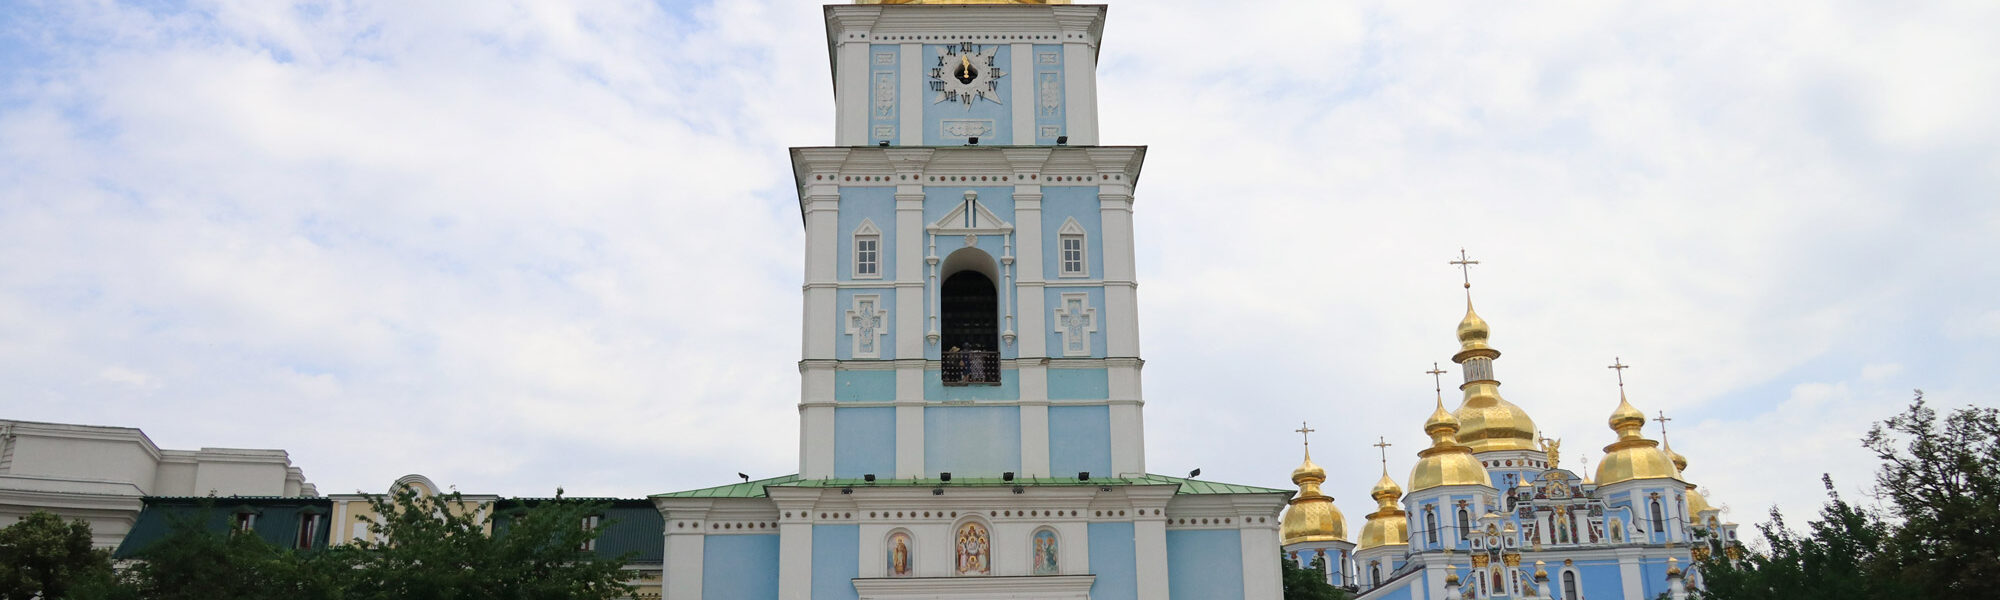 Kiev verkennen met een gids - Klokkentoren van Sint Sofiakathedraal